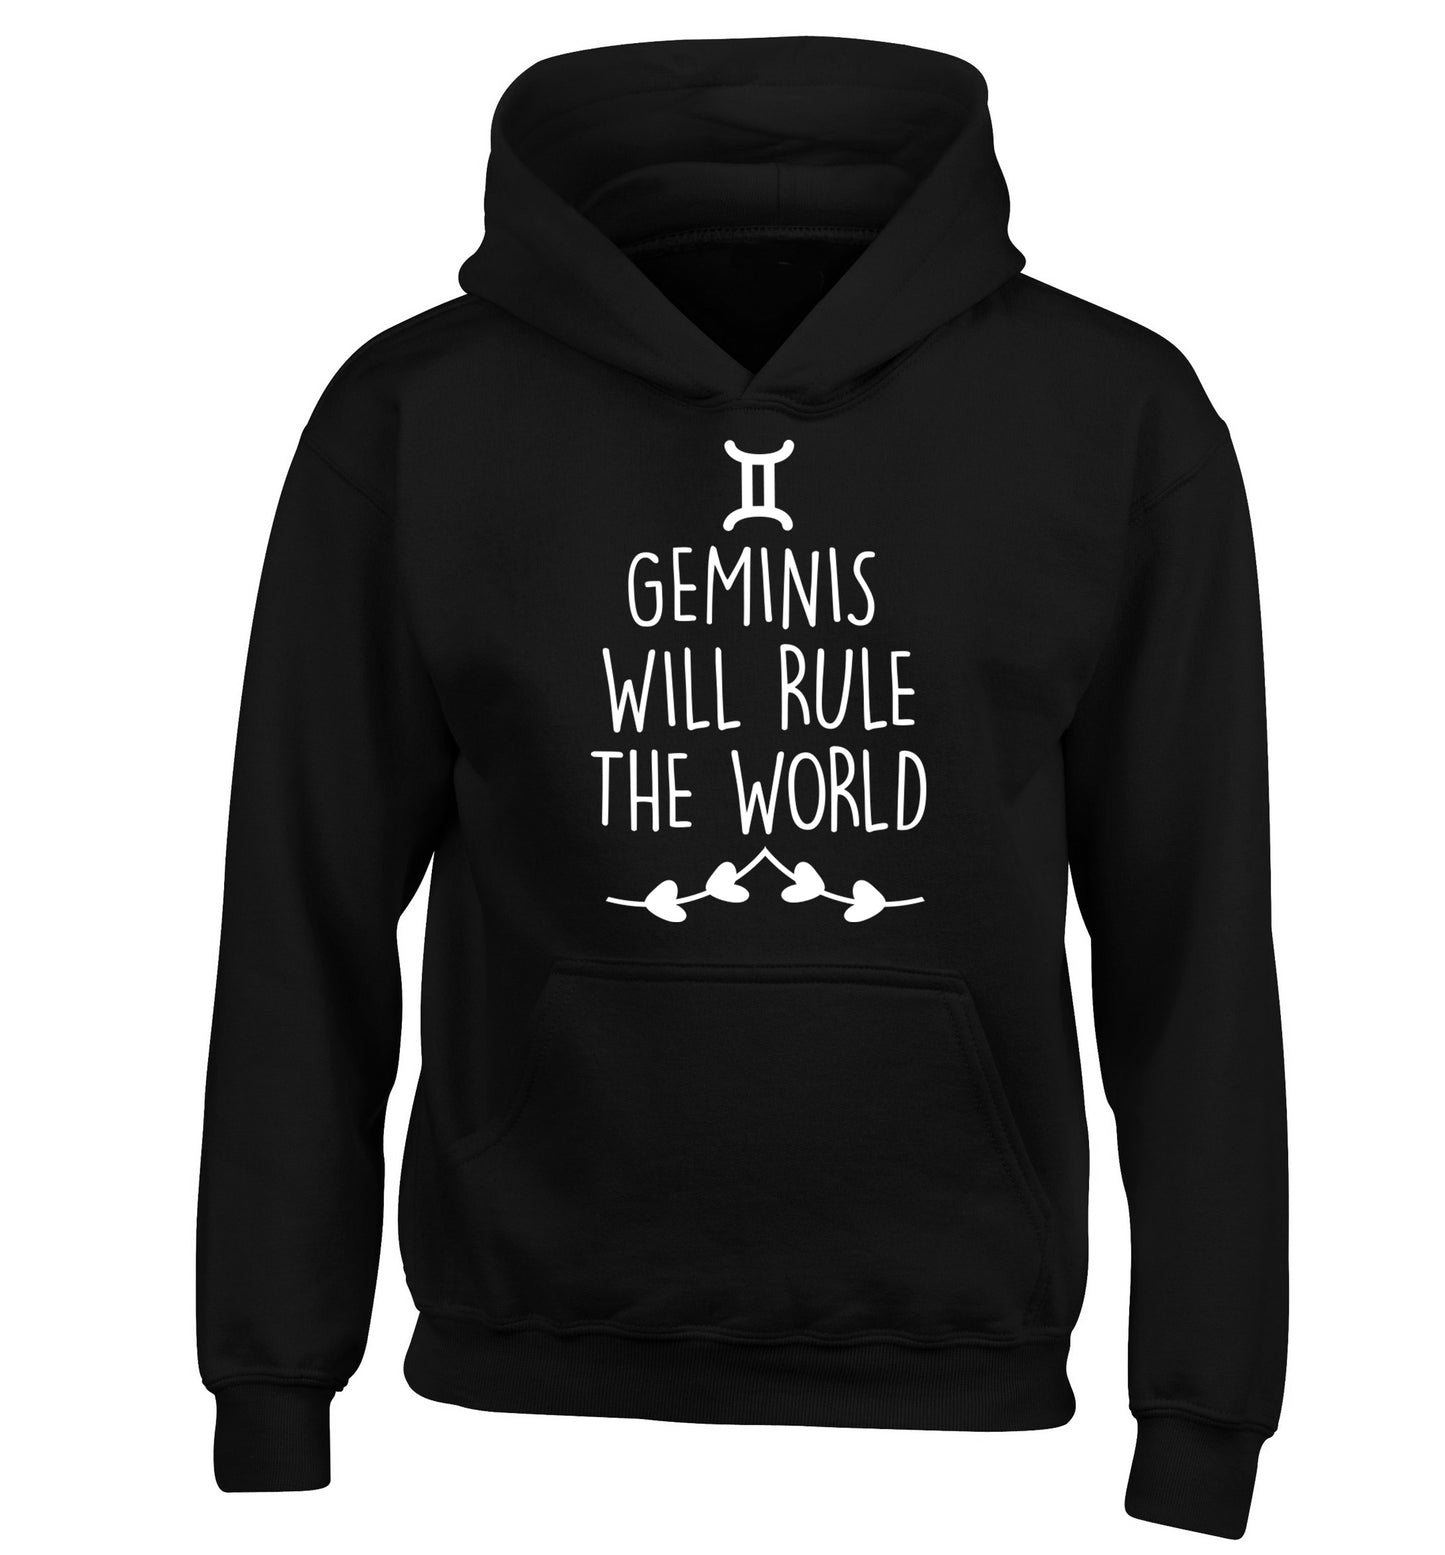 Geminis will rule the world children's black hoodie 12-13 Years